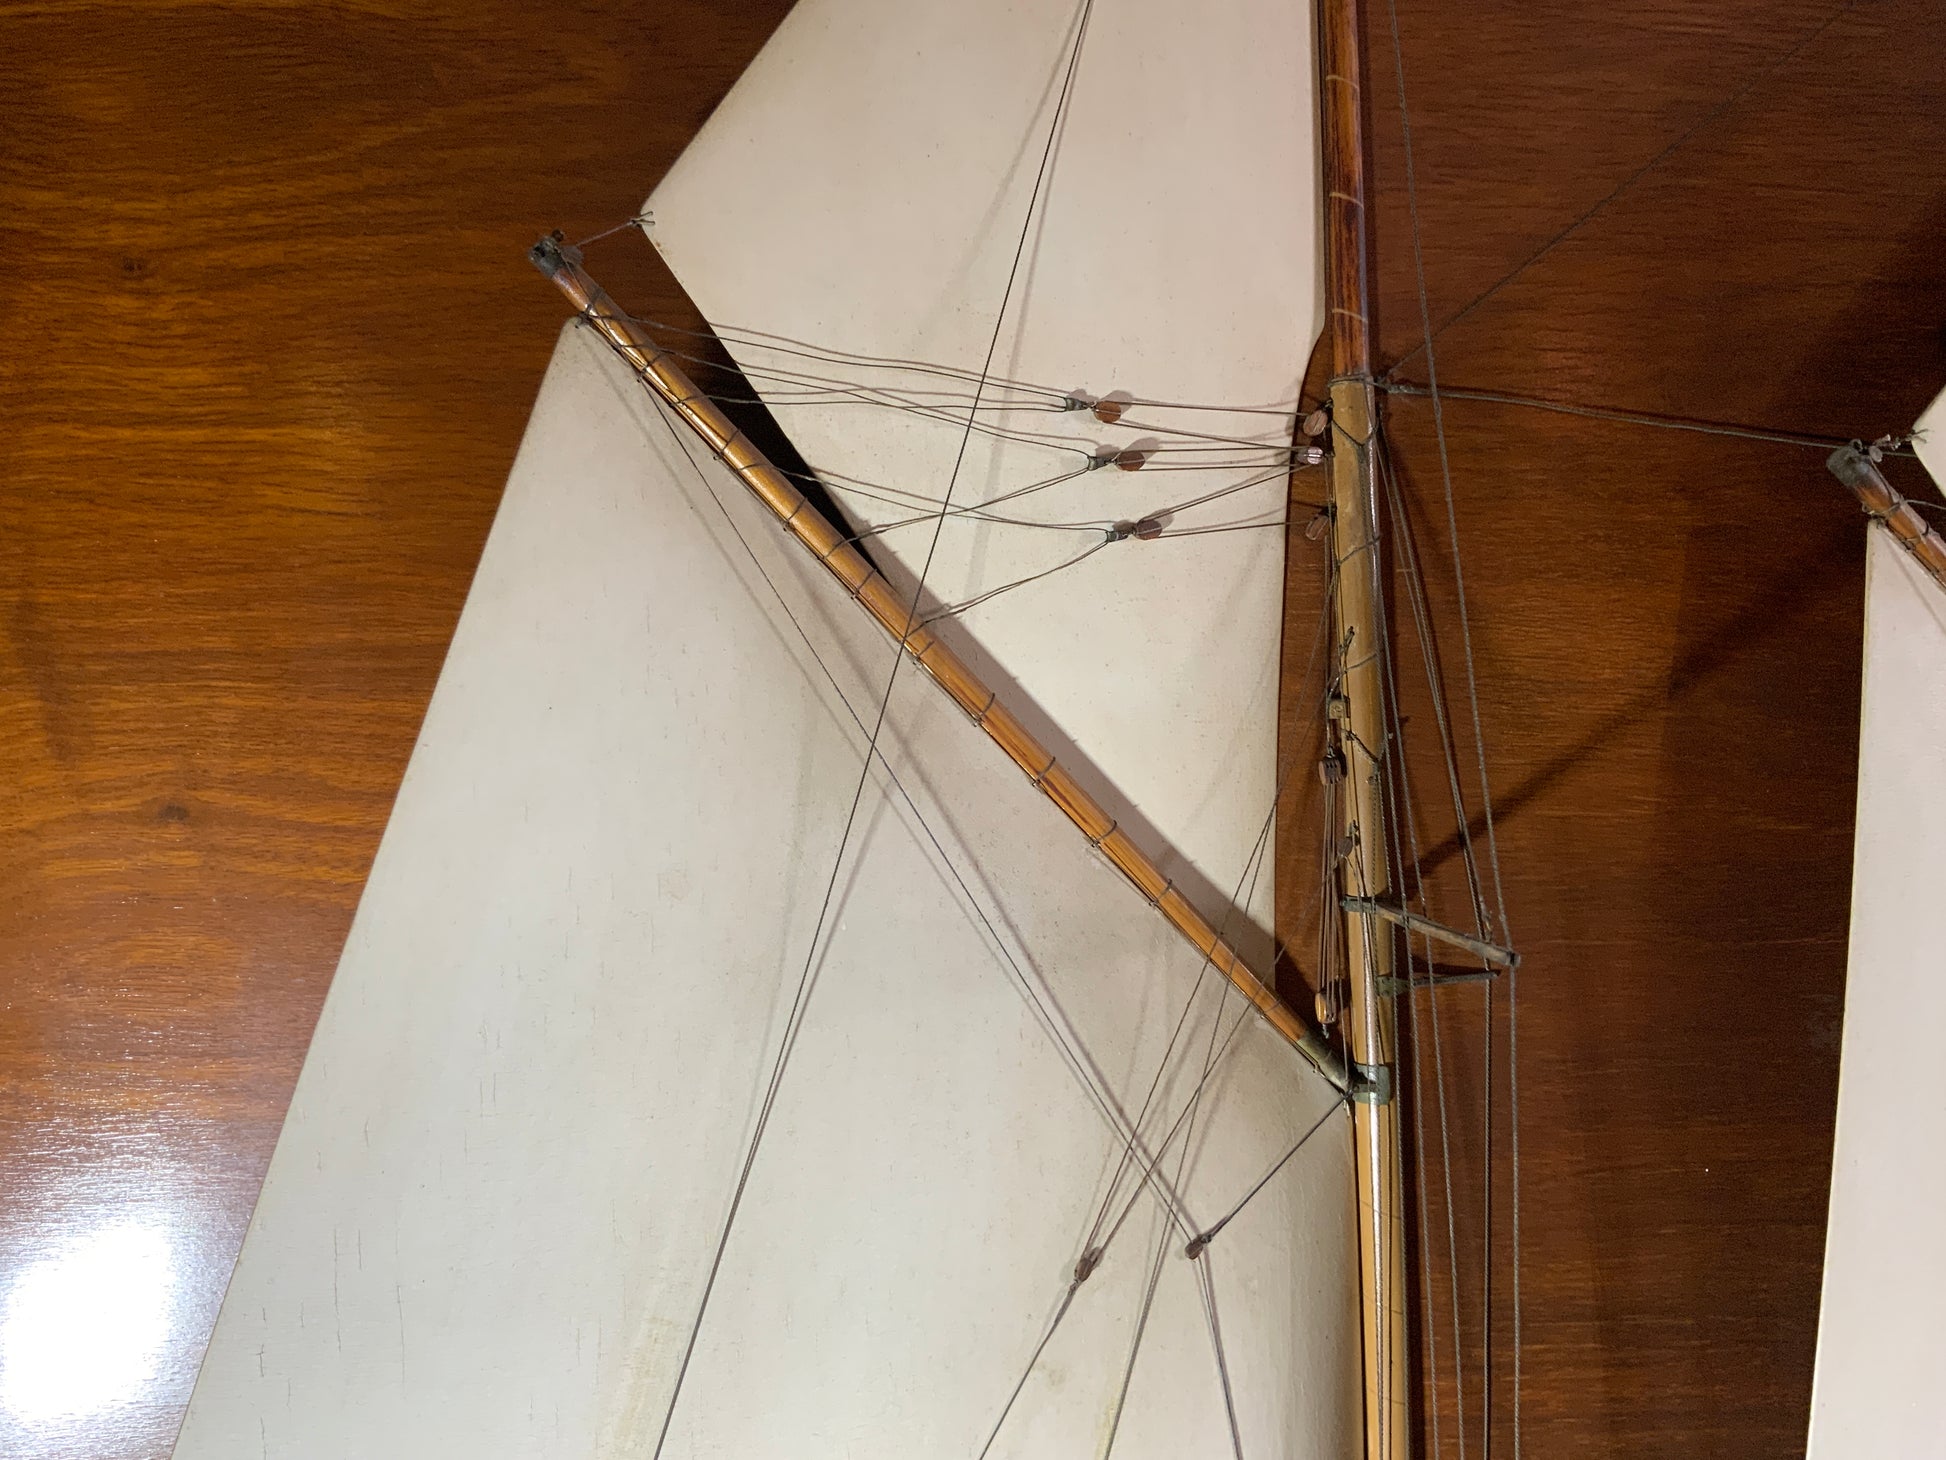 Builder’s Half Model of the Schooner Yacht Migrant - Lannan Gallery